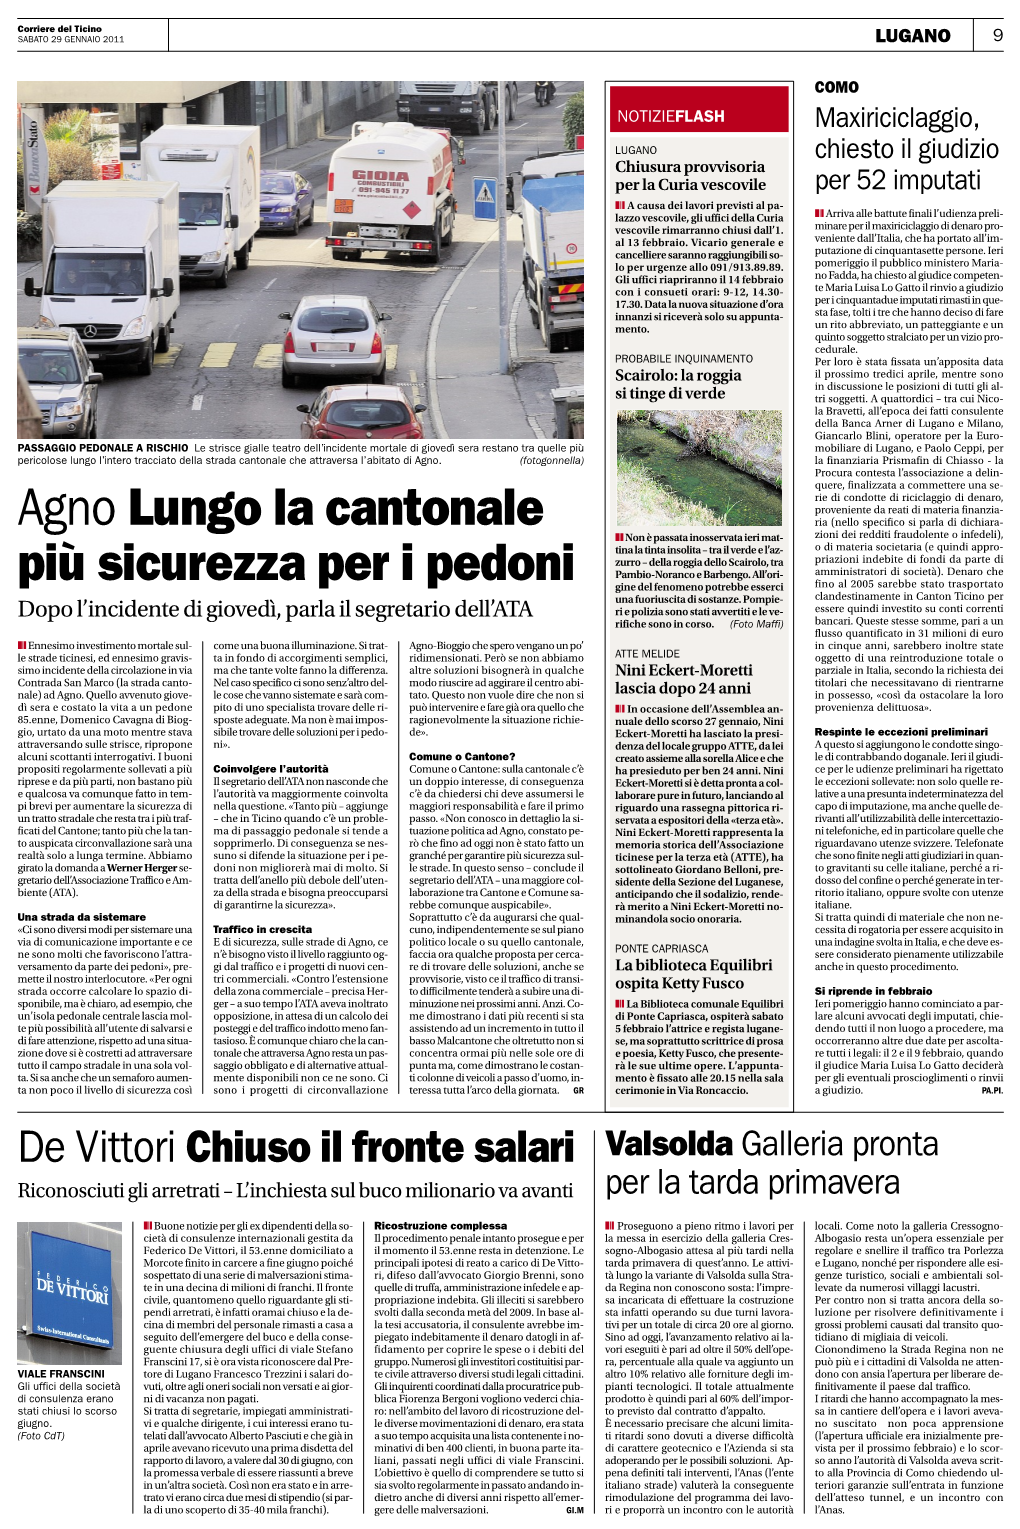 Corriere Del Ticino 29012011